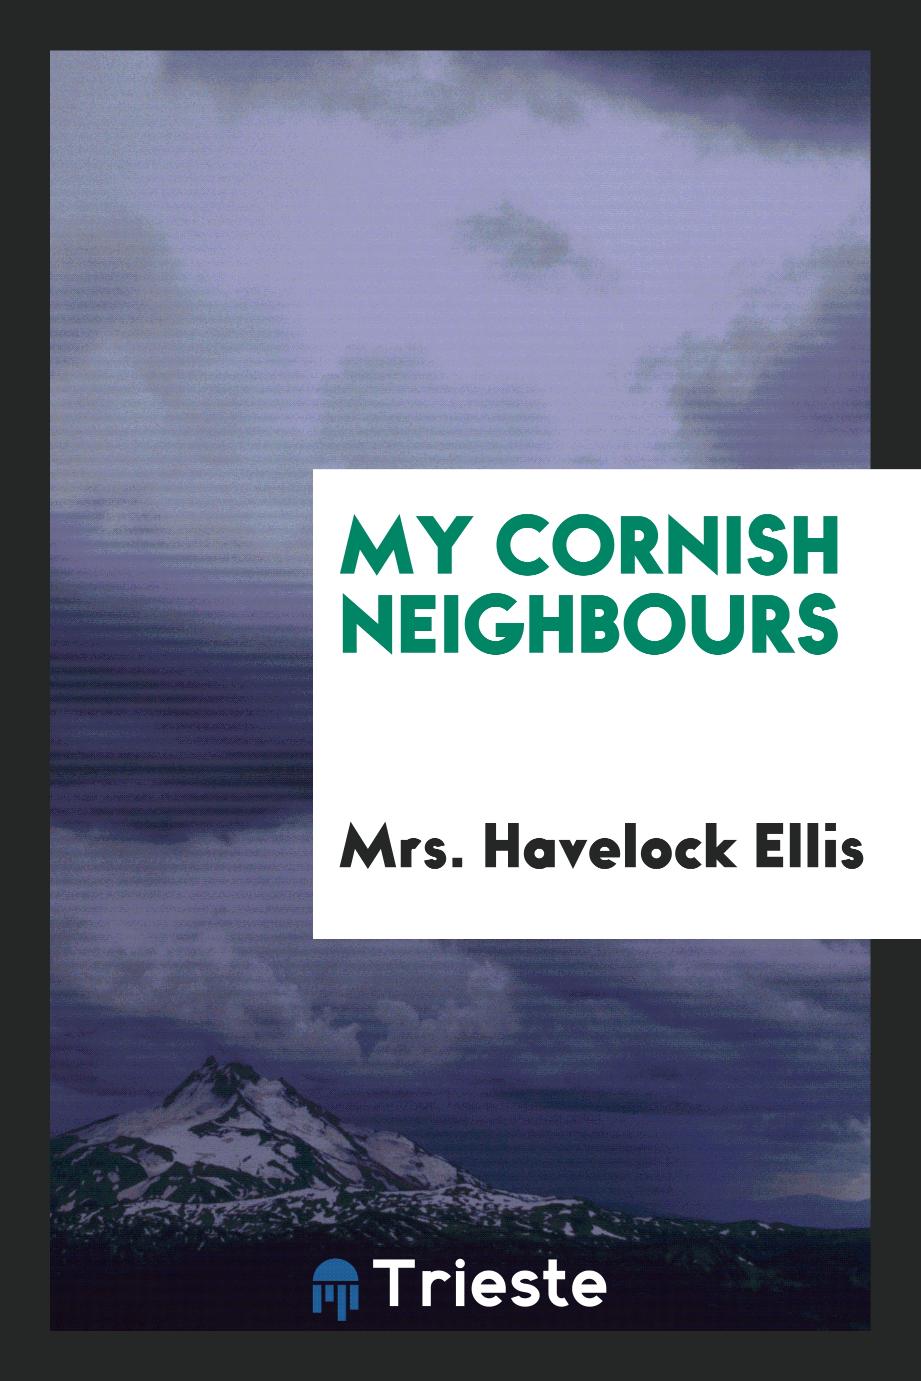 My Cornish neighbours